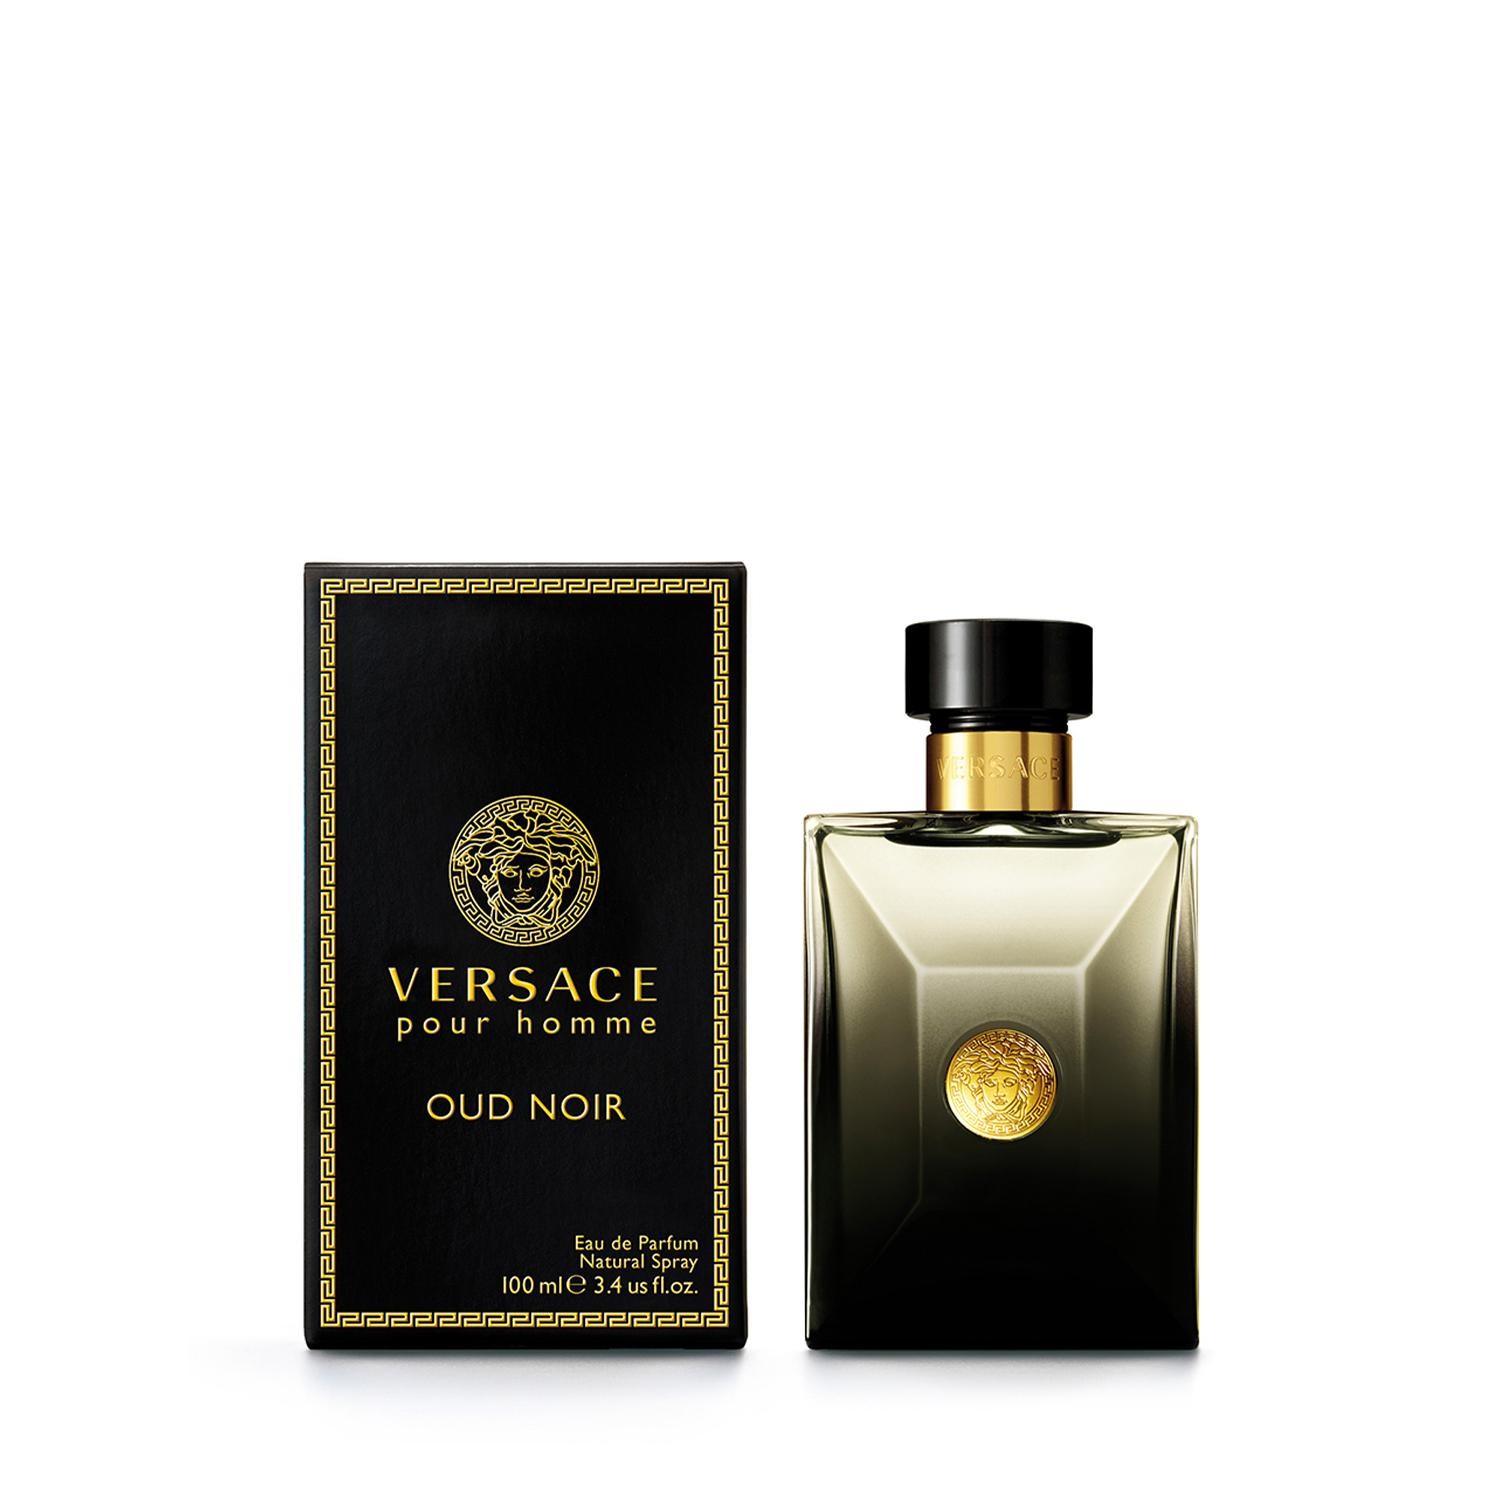 Image of Eau de parfum uomo Gianni Versace Versace - pour homme oud noir edp sp